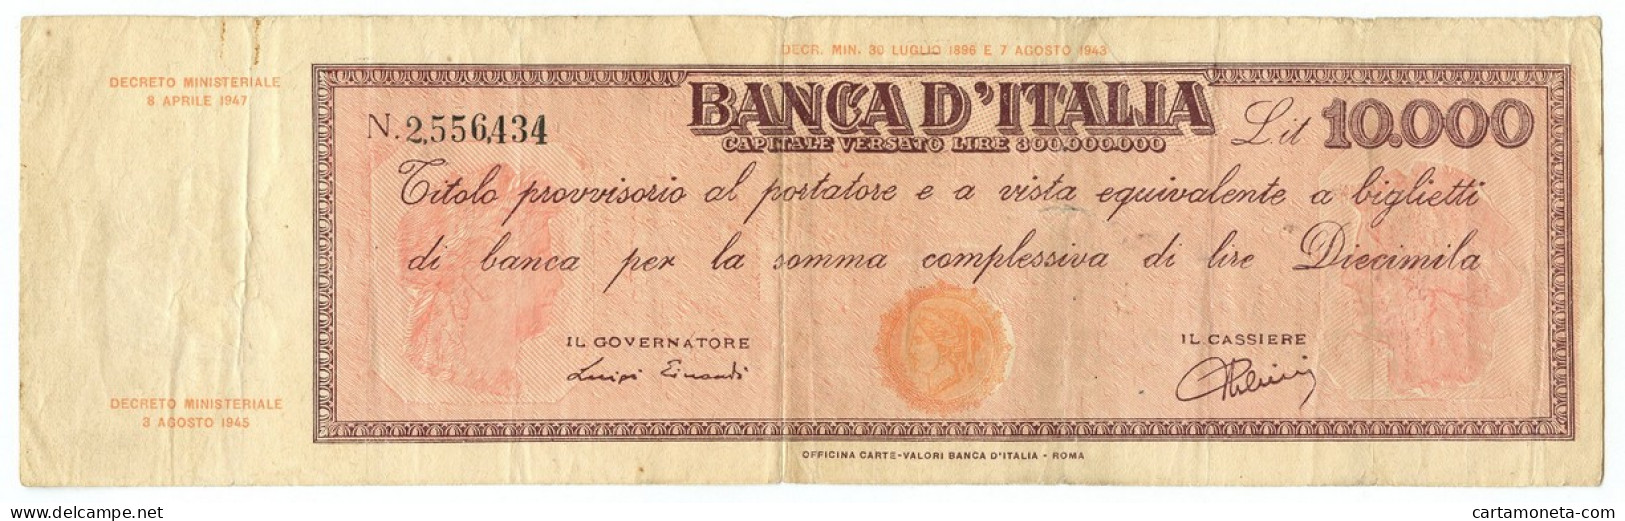 10000 LIRE FALSO D'EPOCA TITOLO PROVVISORIO TESTINA REPUBBLICA IT 08/04/1947 QBB - [ 8] Specimen